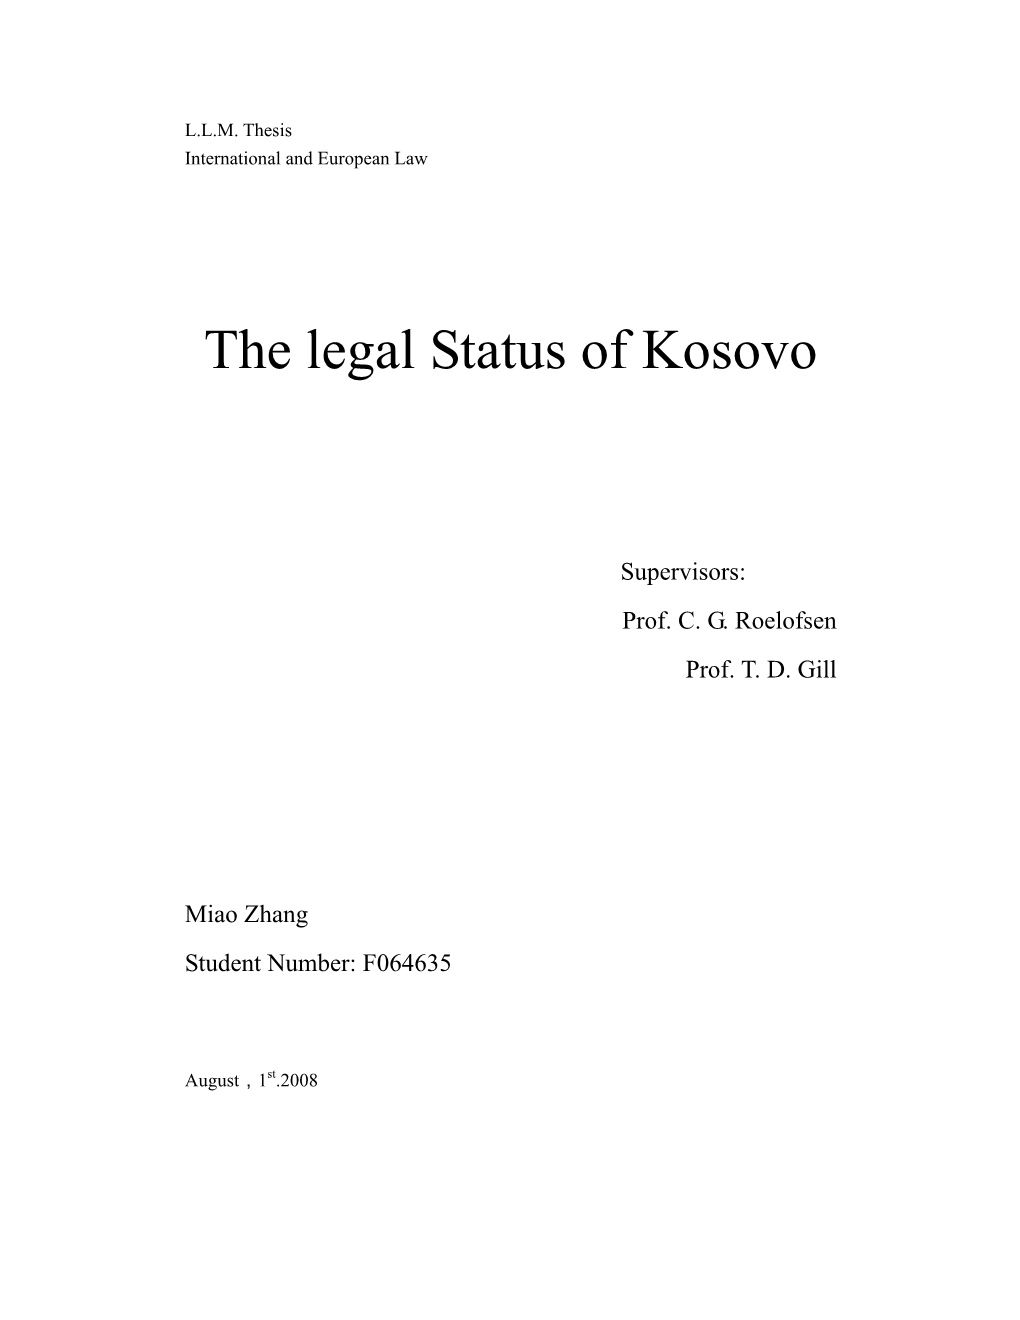 The Legal Status of Kosovo